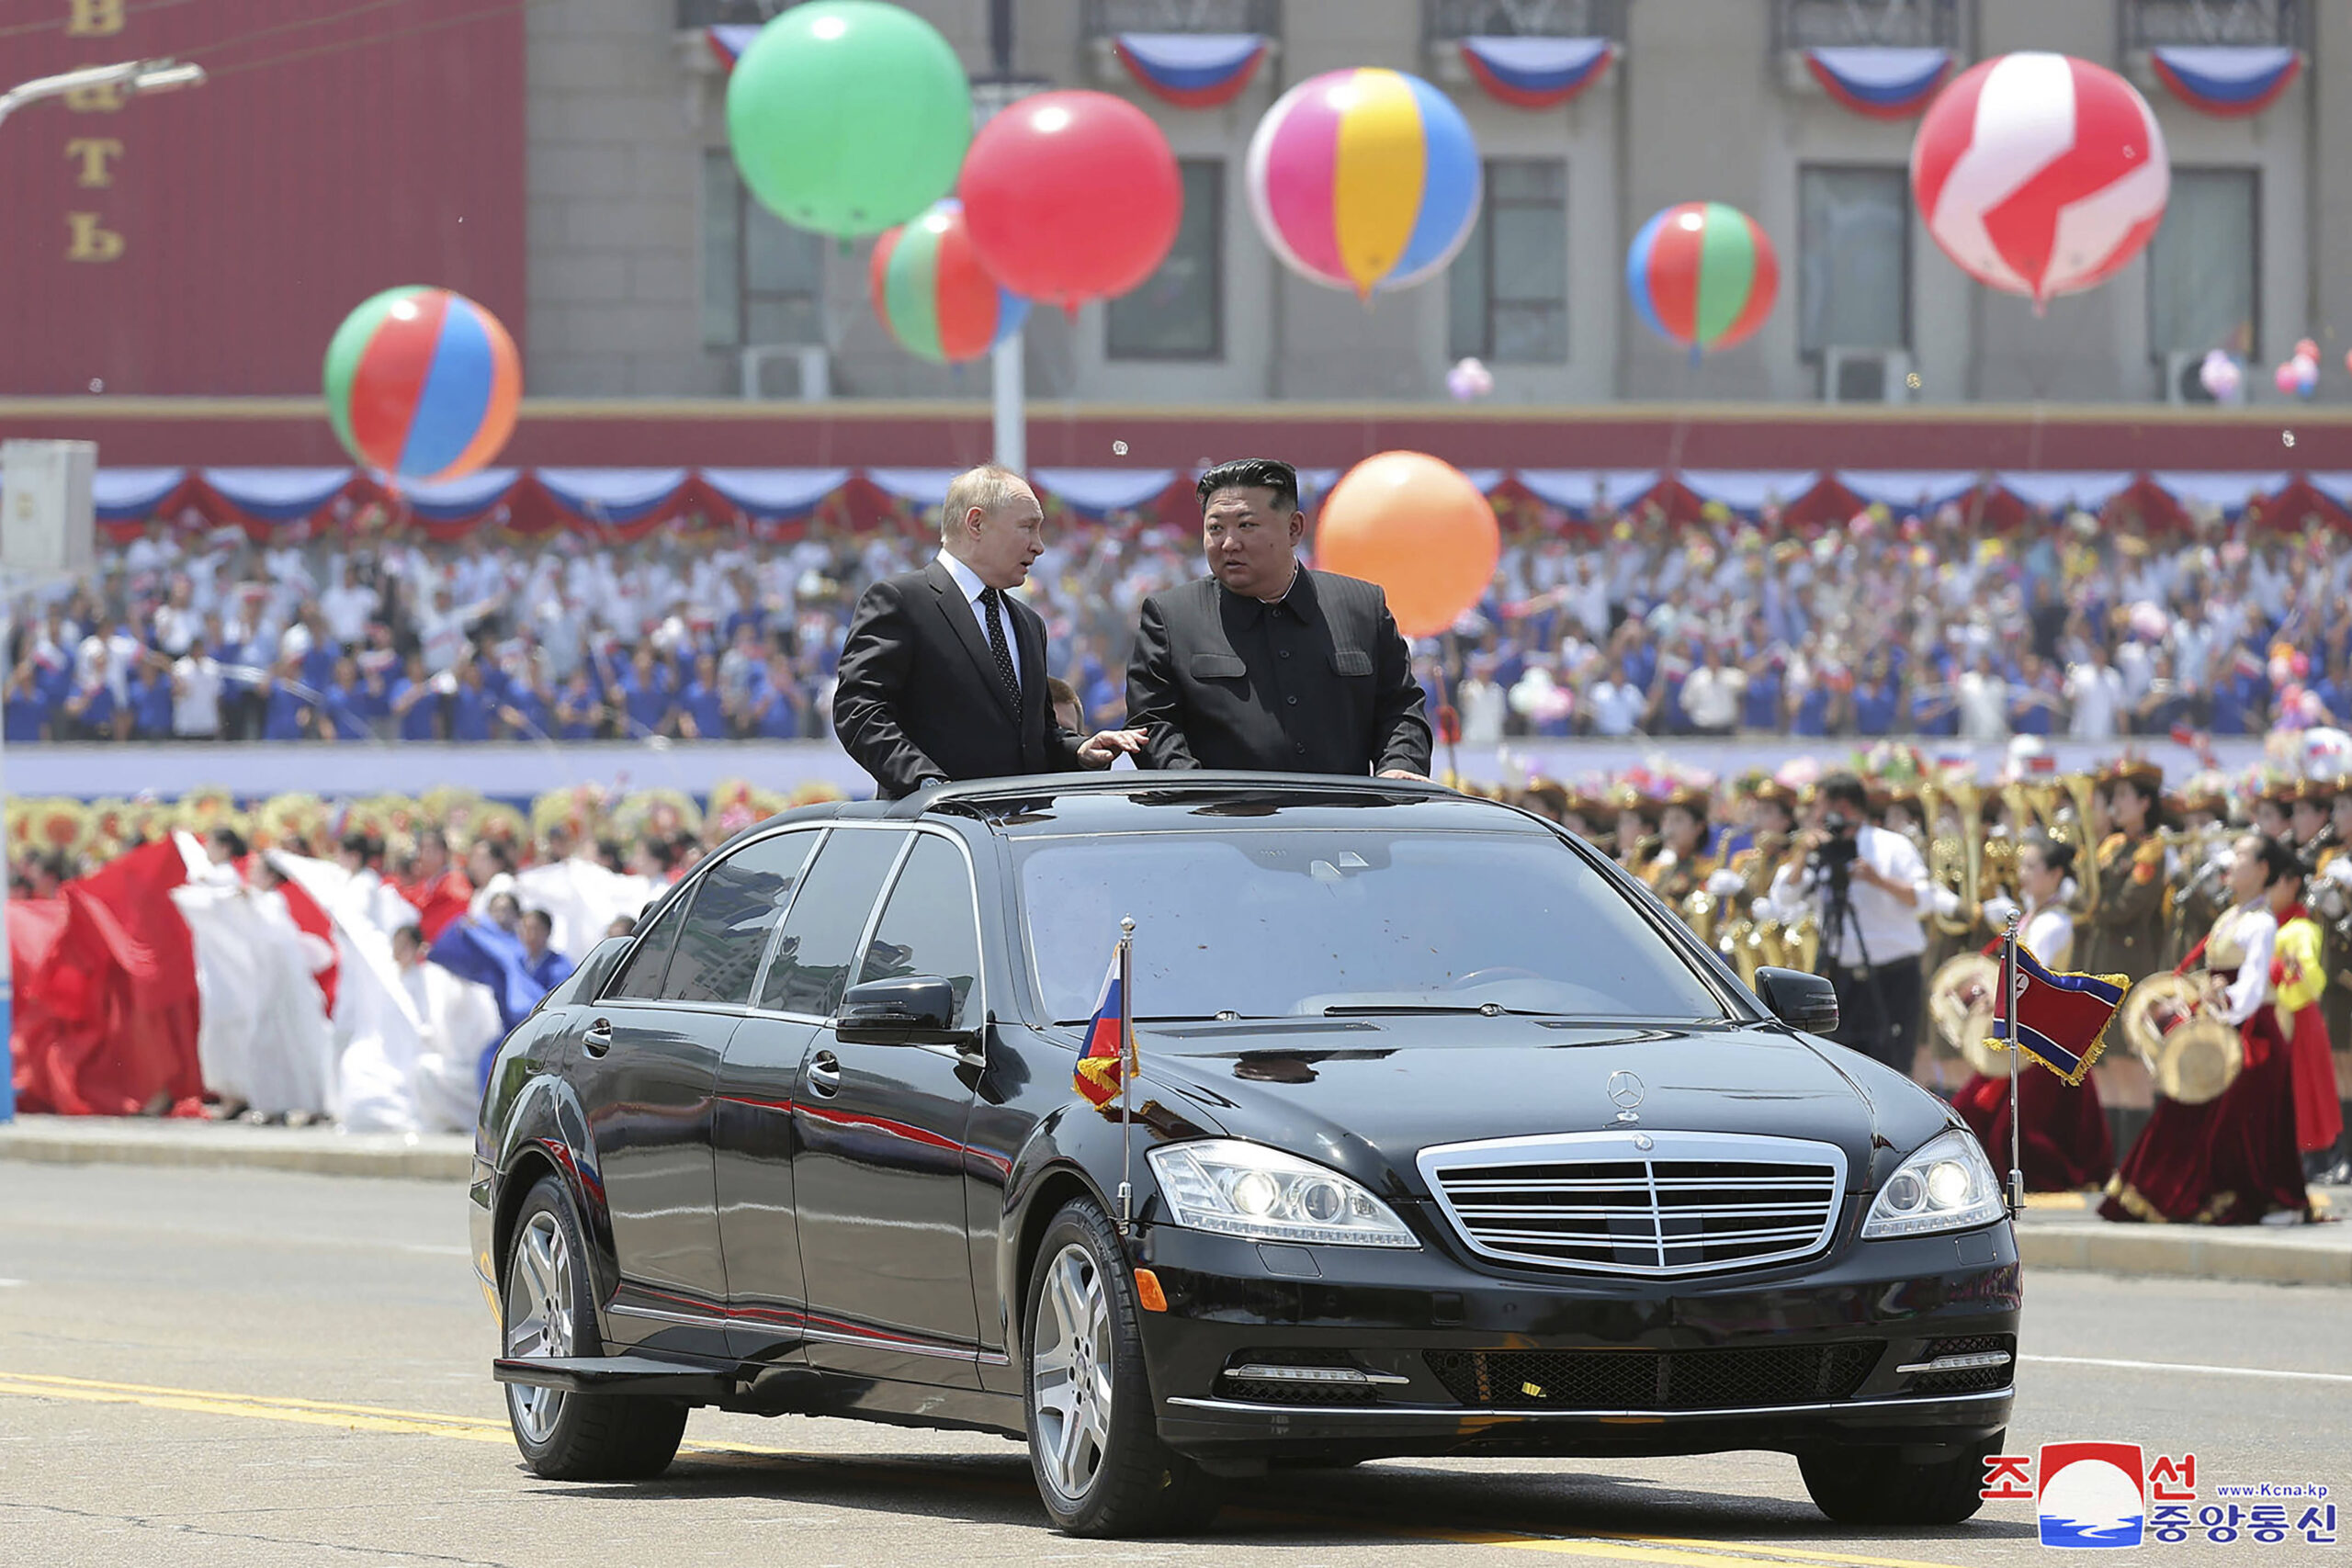 Le président russe Vladimir Poutine et le dirigeant nord-coréen Kim Jong Un défilent en voiture lors de la cérémonie officielle de bienvenue sur la place Kim Il Sung à Pyongyang, en Corée du Nord, le mercredi 19 juin 2024. © AP Photo/KCNA